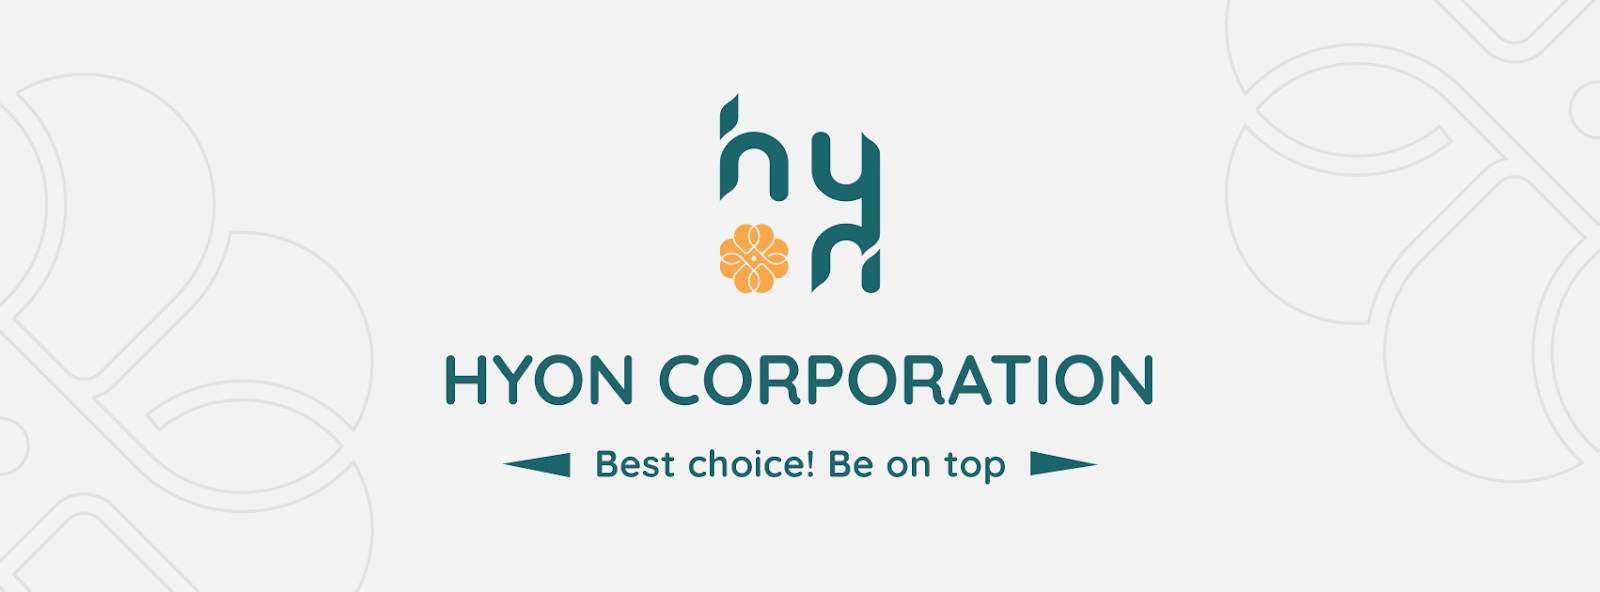 HYON - lựa chọn uy tín hàng đầu của người tiêu dùng